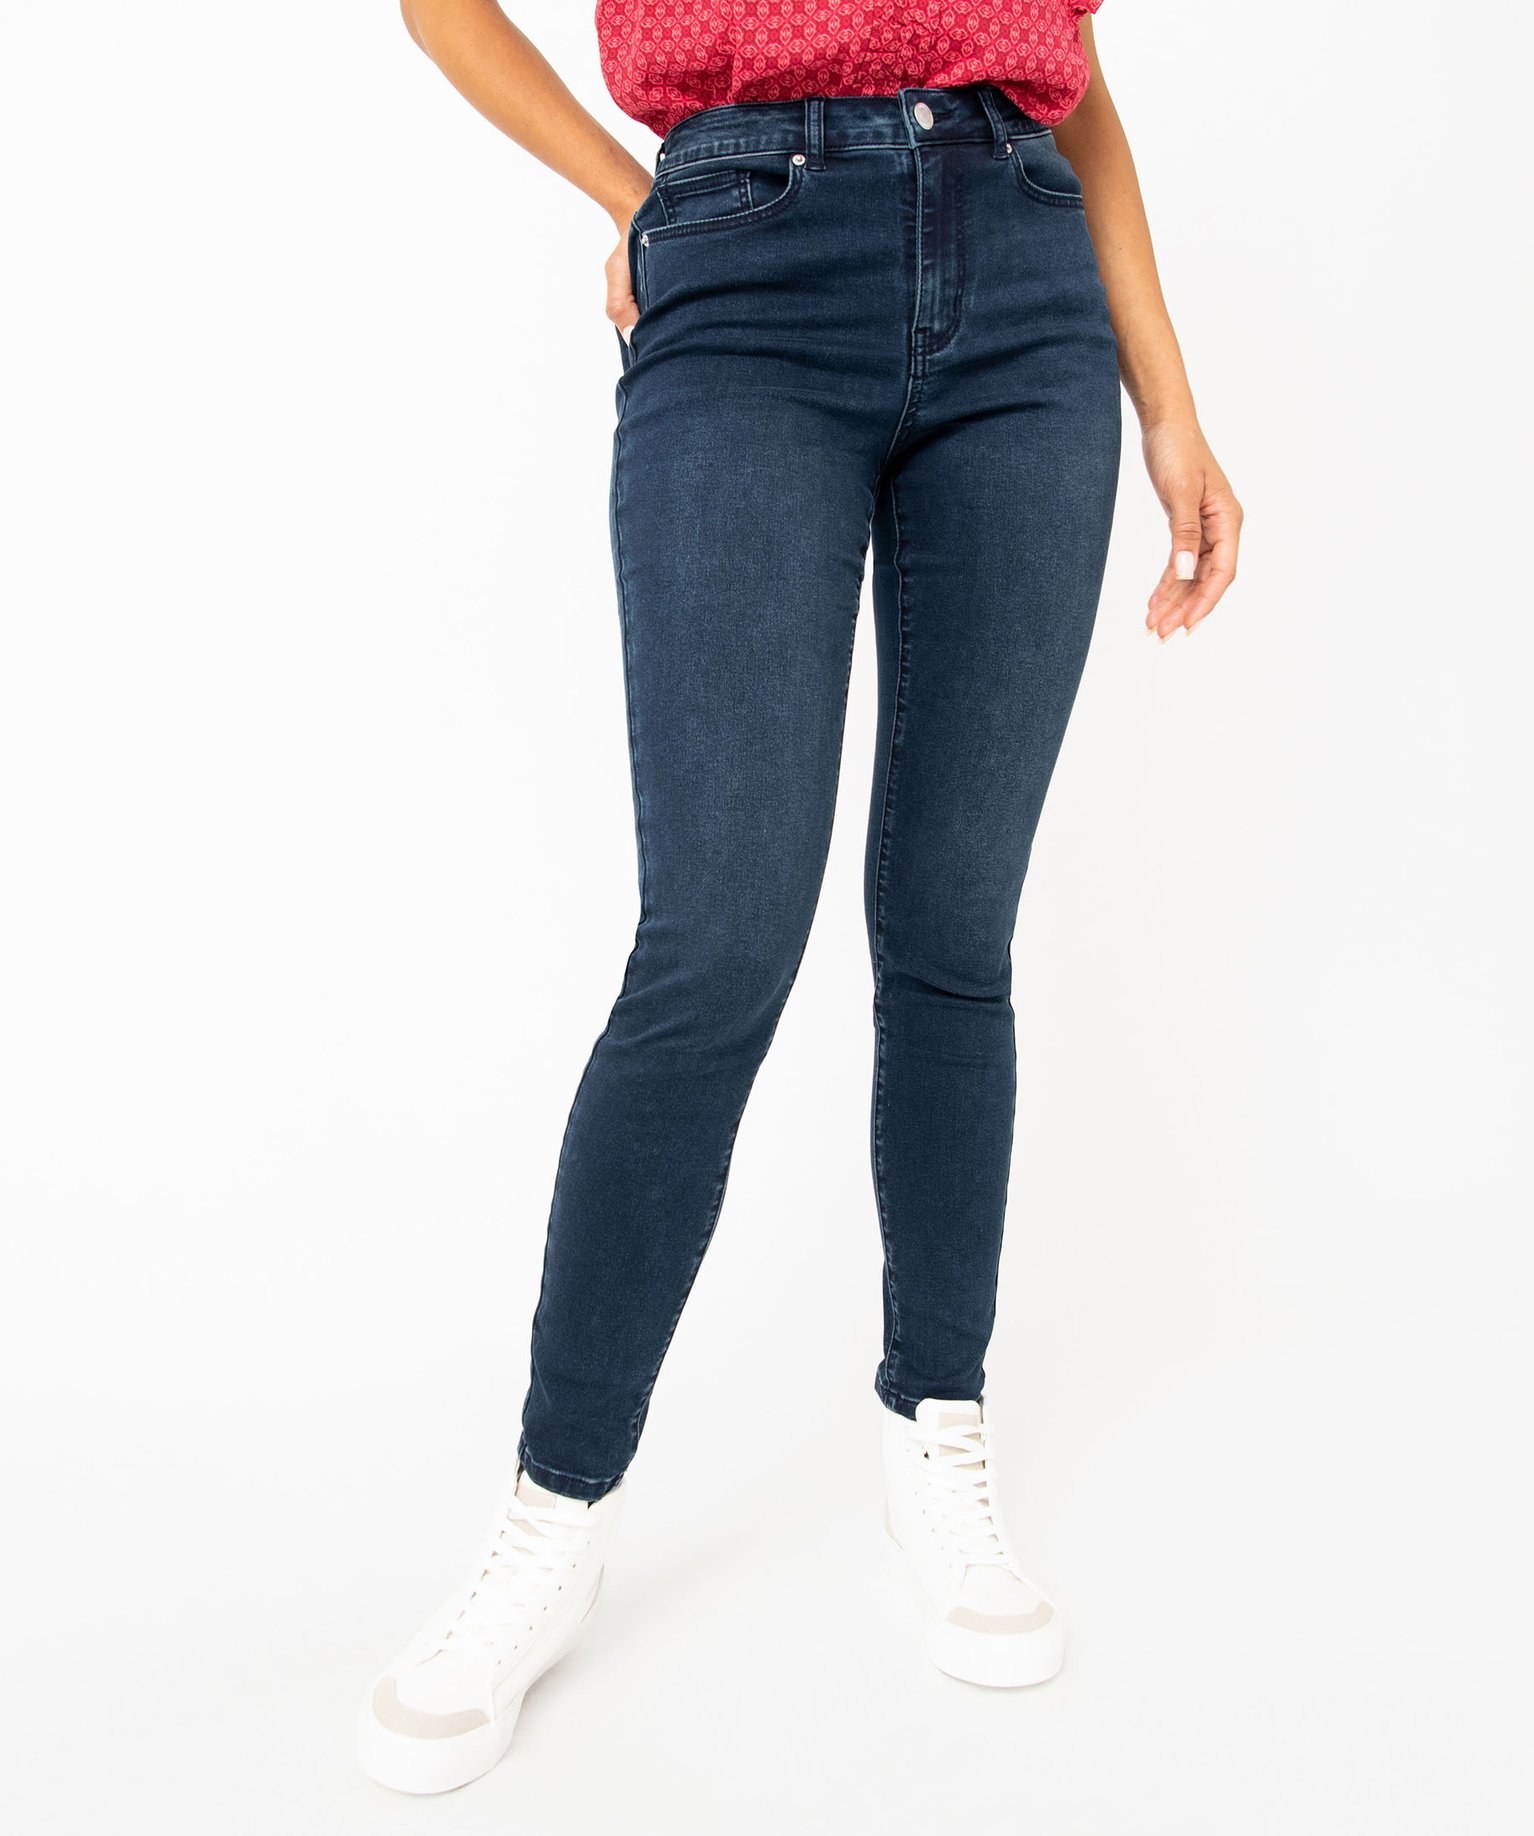 jean skinny taille haute stretch femme bleu